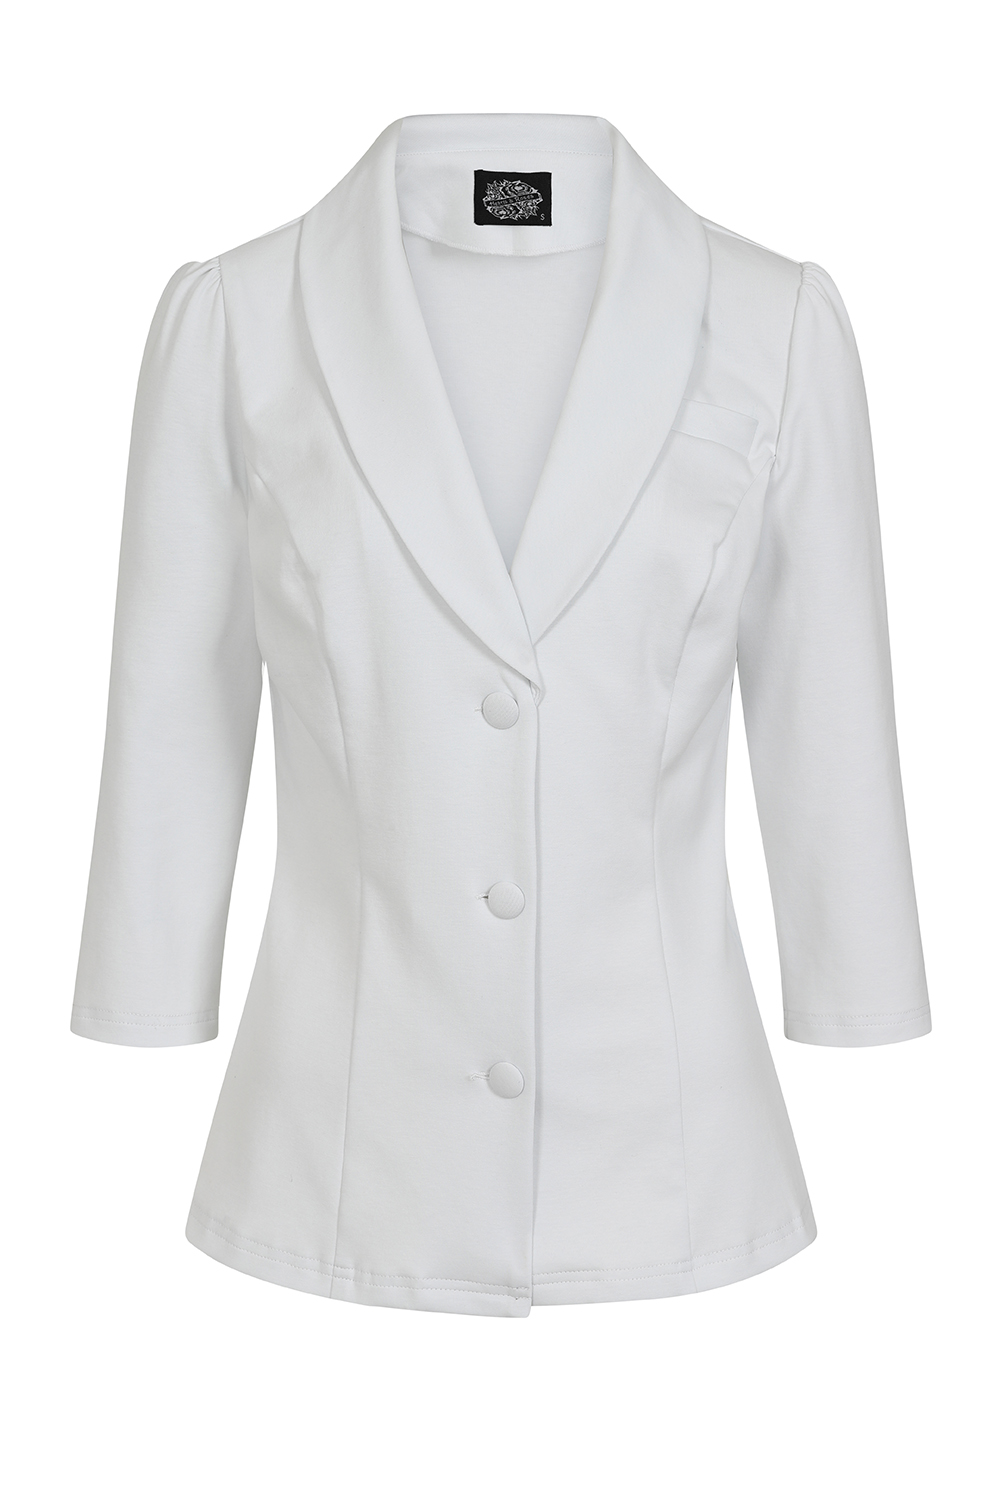 Leila White Jacket